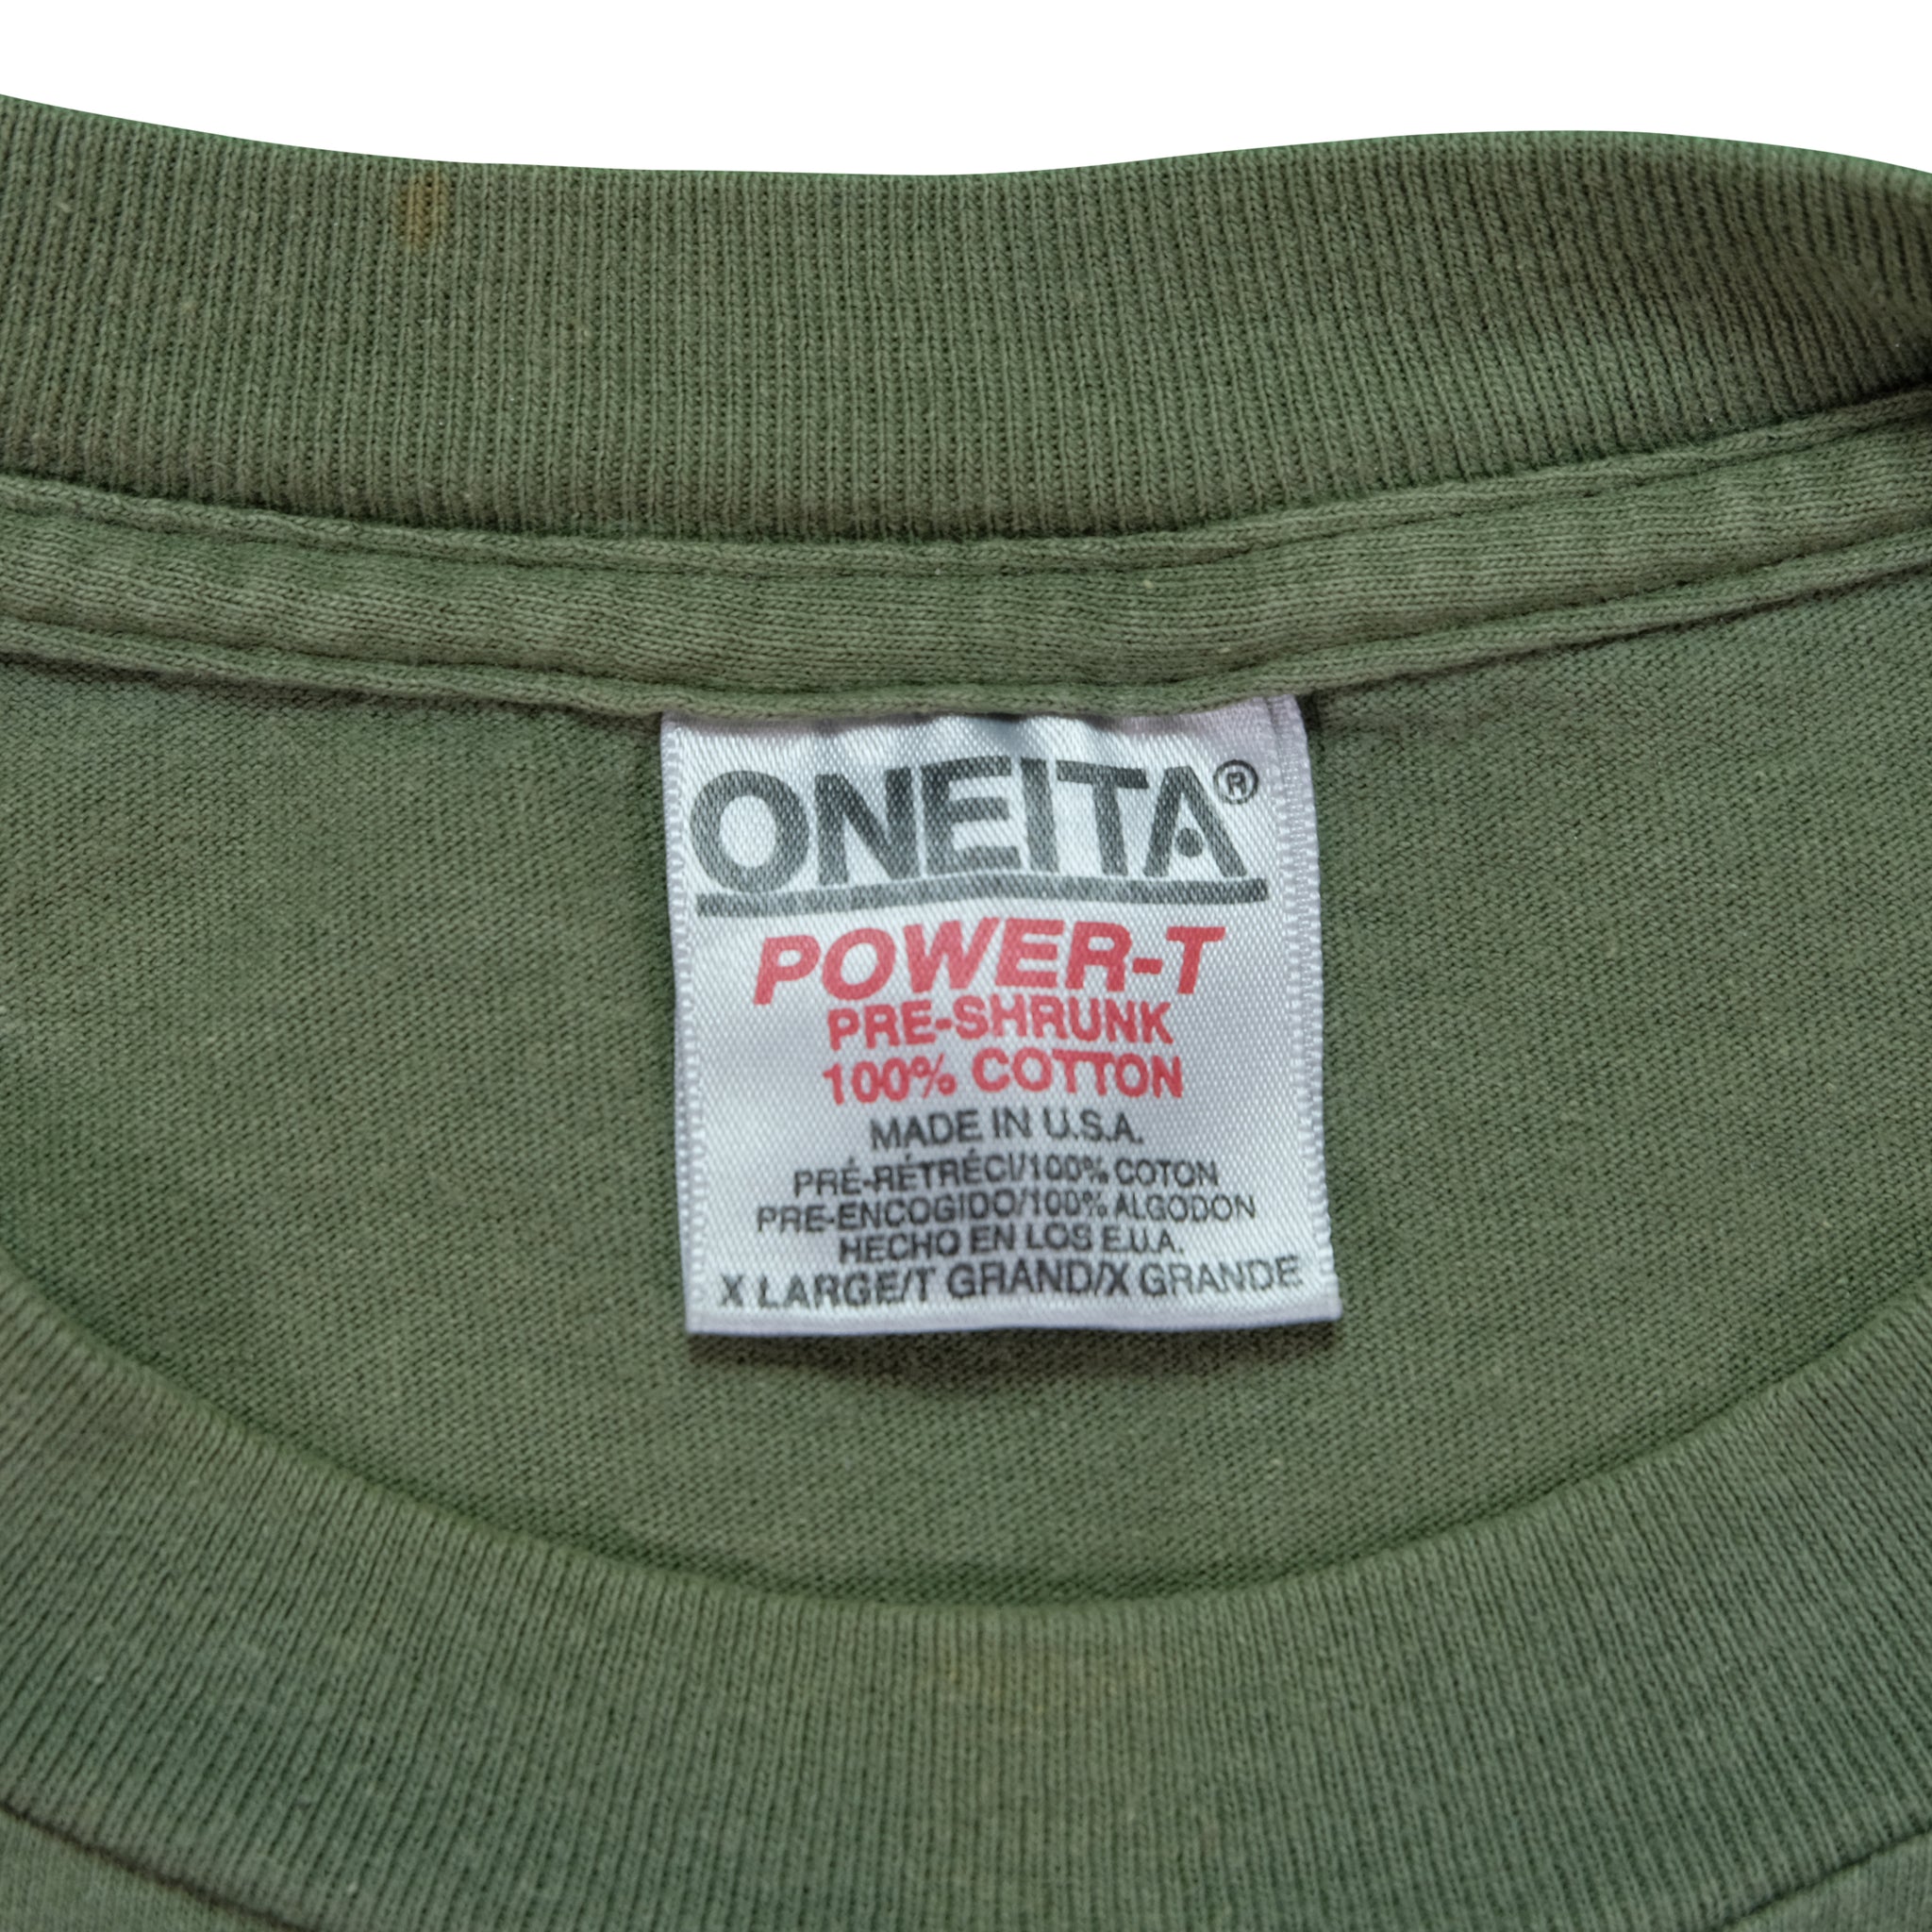 Vintage Apple M2 Powerbook Tee on Oneita | Reset Vintage Shirts